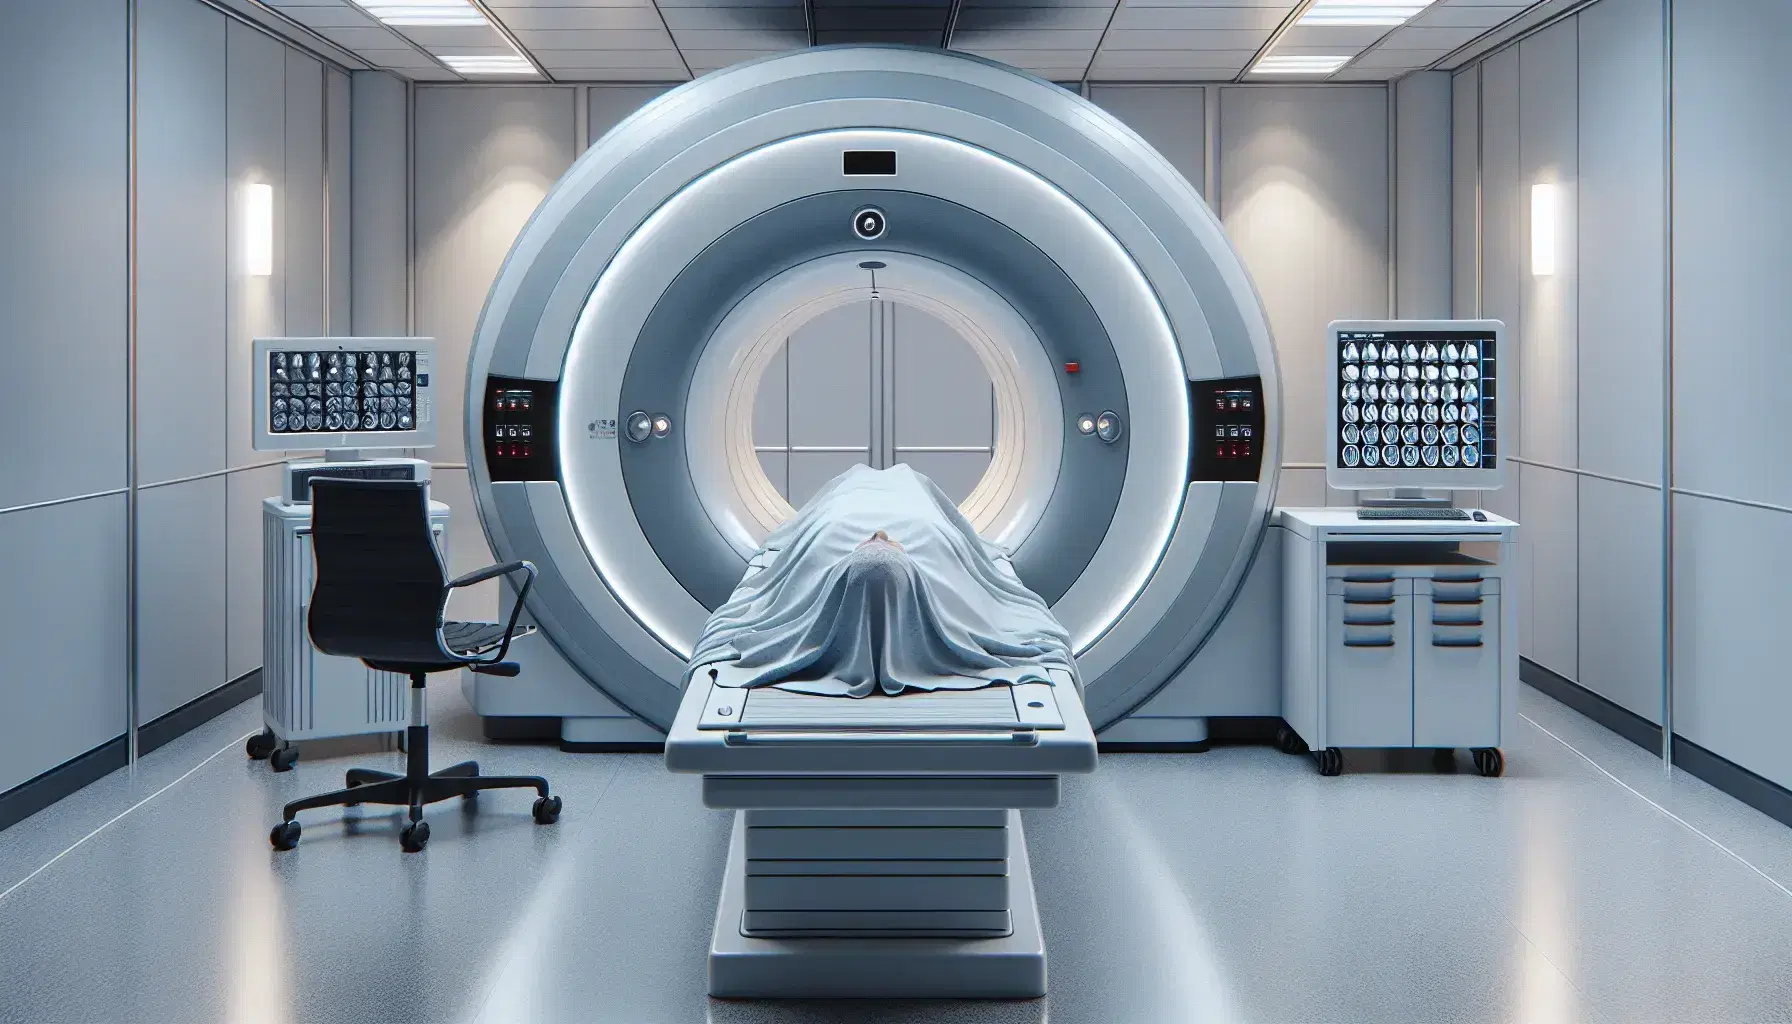 Sala de resonancia magnética con máquina central y camilla, figura humana recostada y monitor mostrando imágenes cerebrales en un entorno clínico.